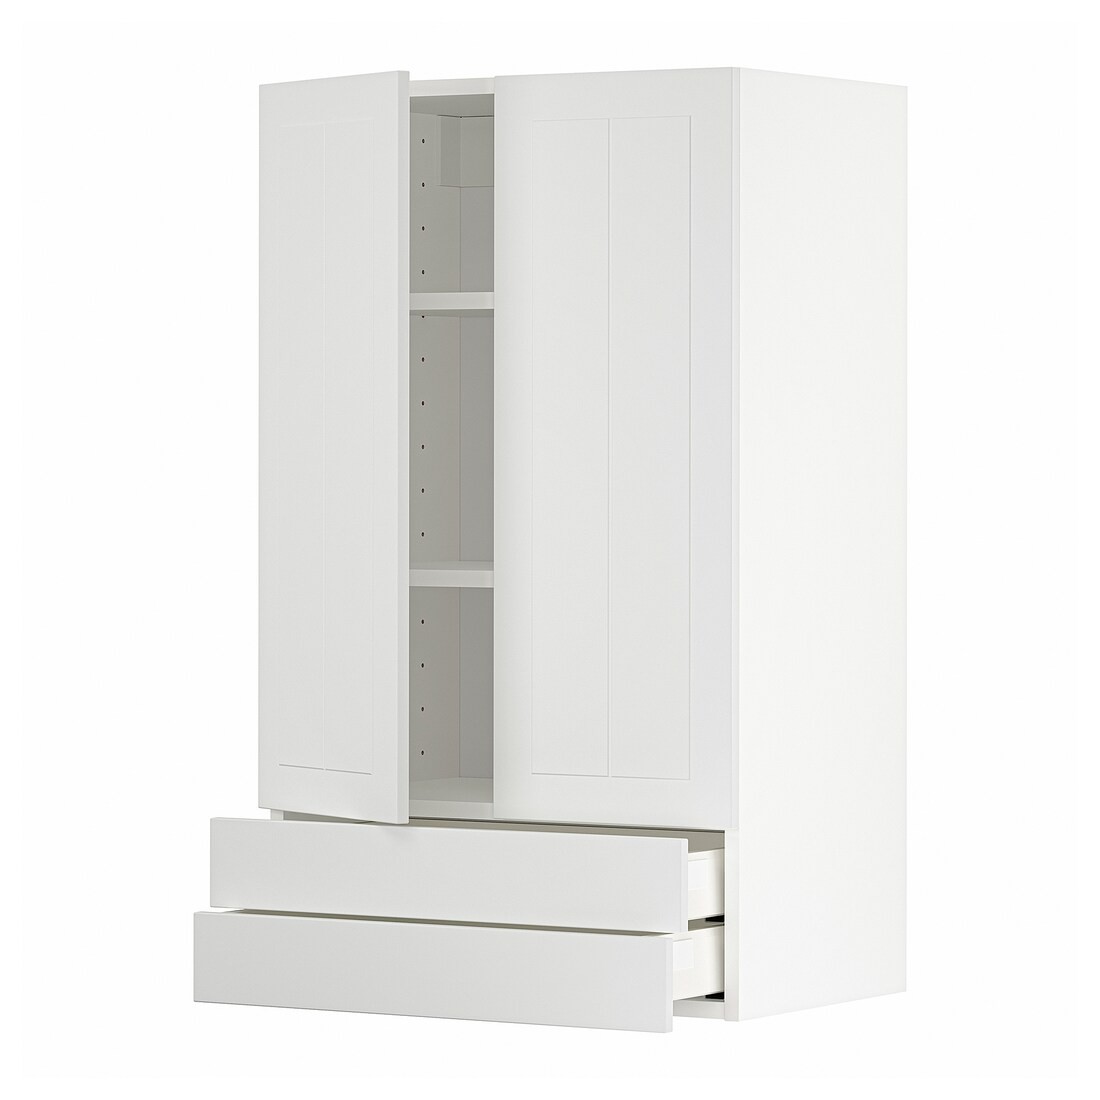 IKEA METOD МЕТОД / MAXIMERA МАКСИМЕРА Навесной шкаф / 2 дверцы / 2 ящика, белый / Stensund белый, 60x100 см 79458543 | 794.585.43